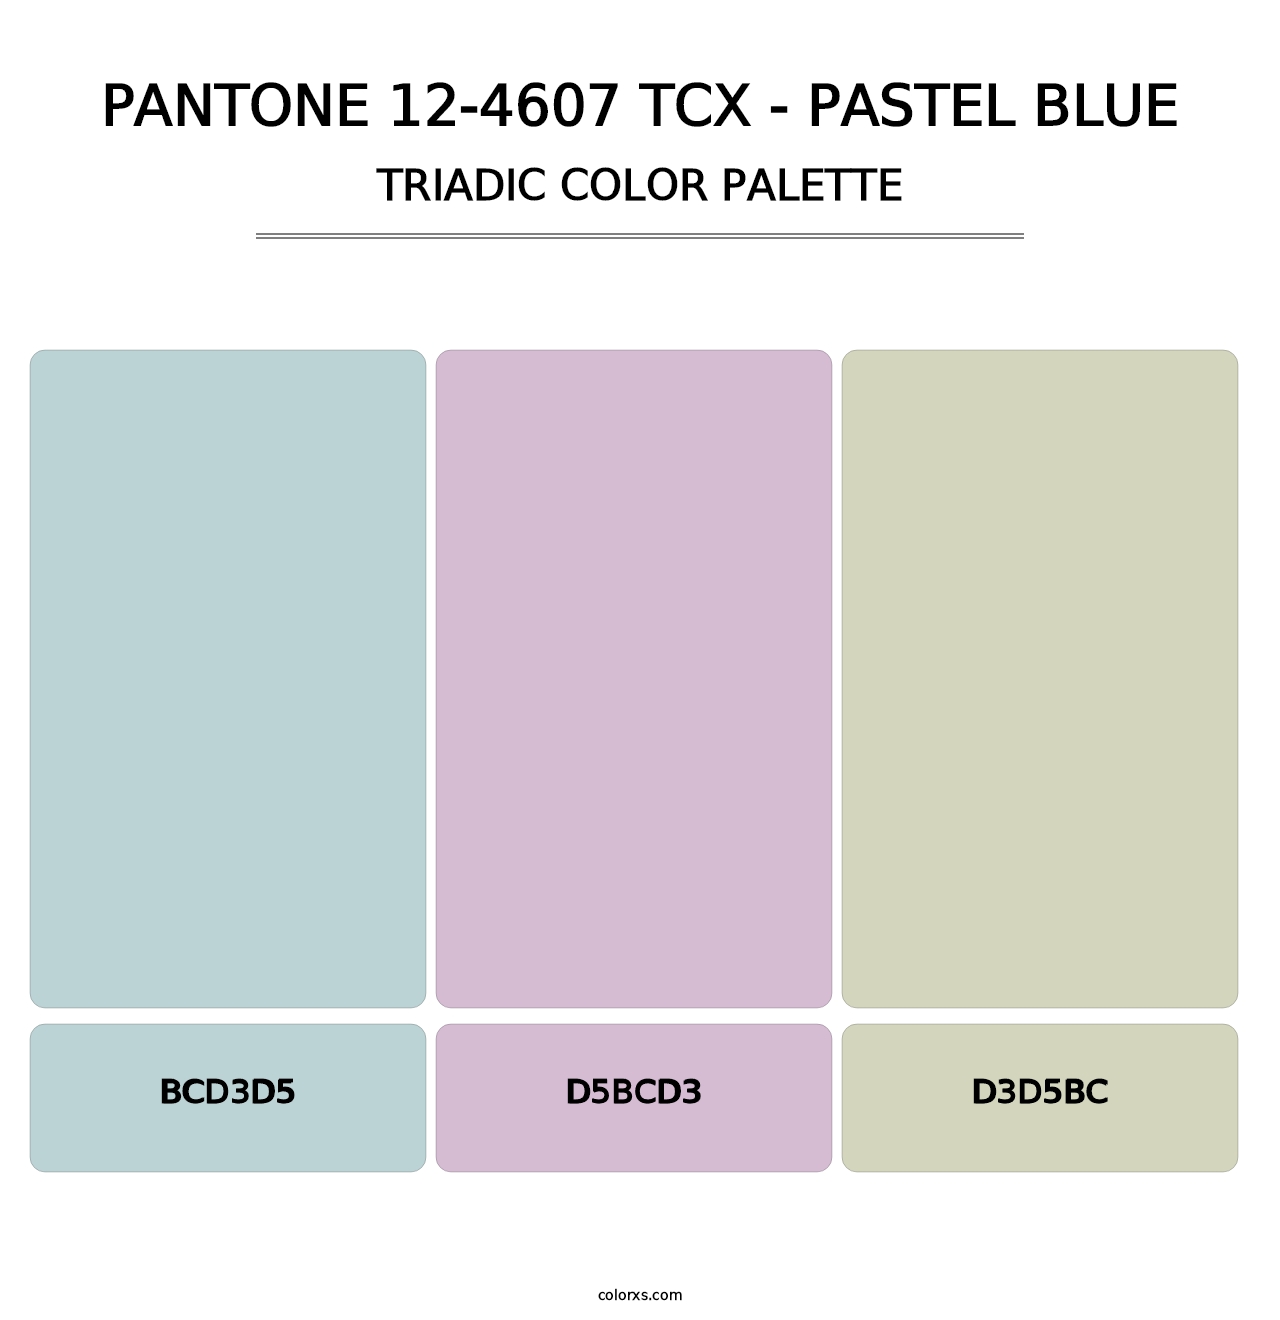 PANTONE 12-4607 TCX - Pastel Blue - Triadic Color Palette